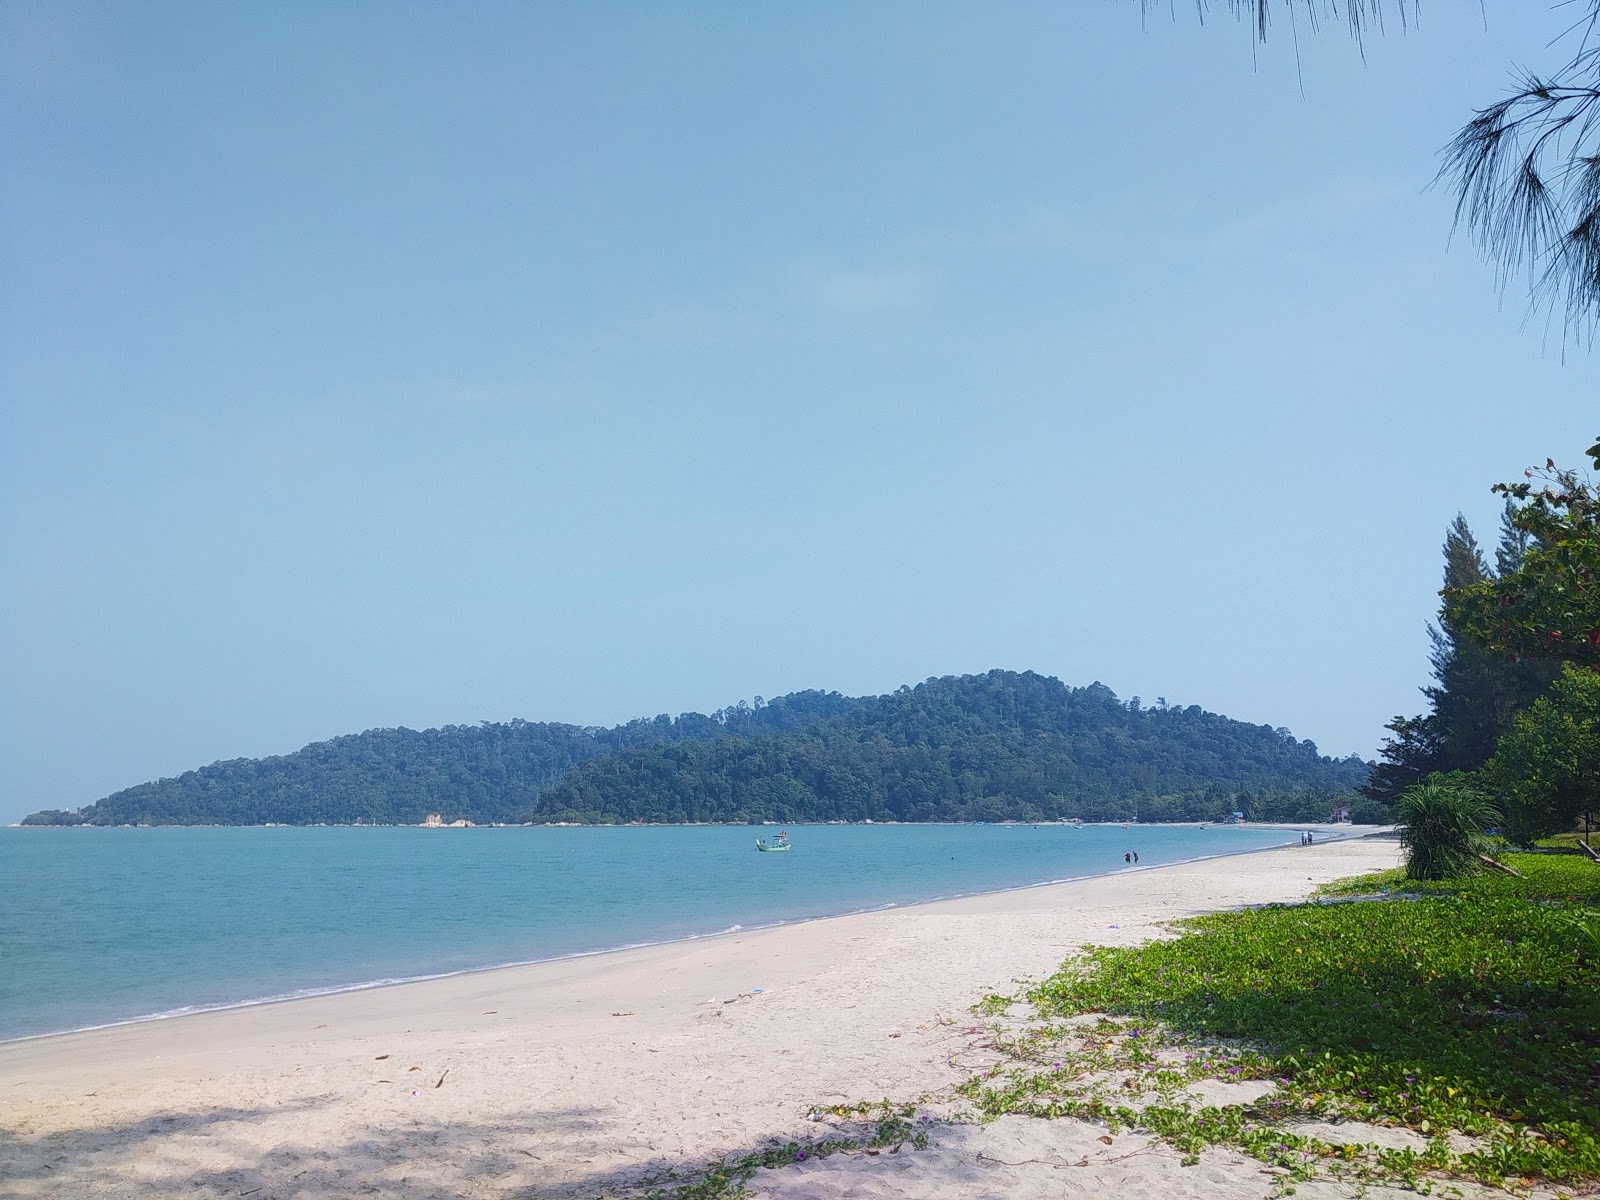 Teluk Senangin Beach'in fotoğrafı - rahatlamayı sevenler arasında popüler bir yer